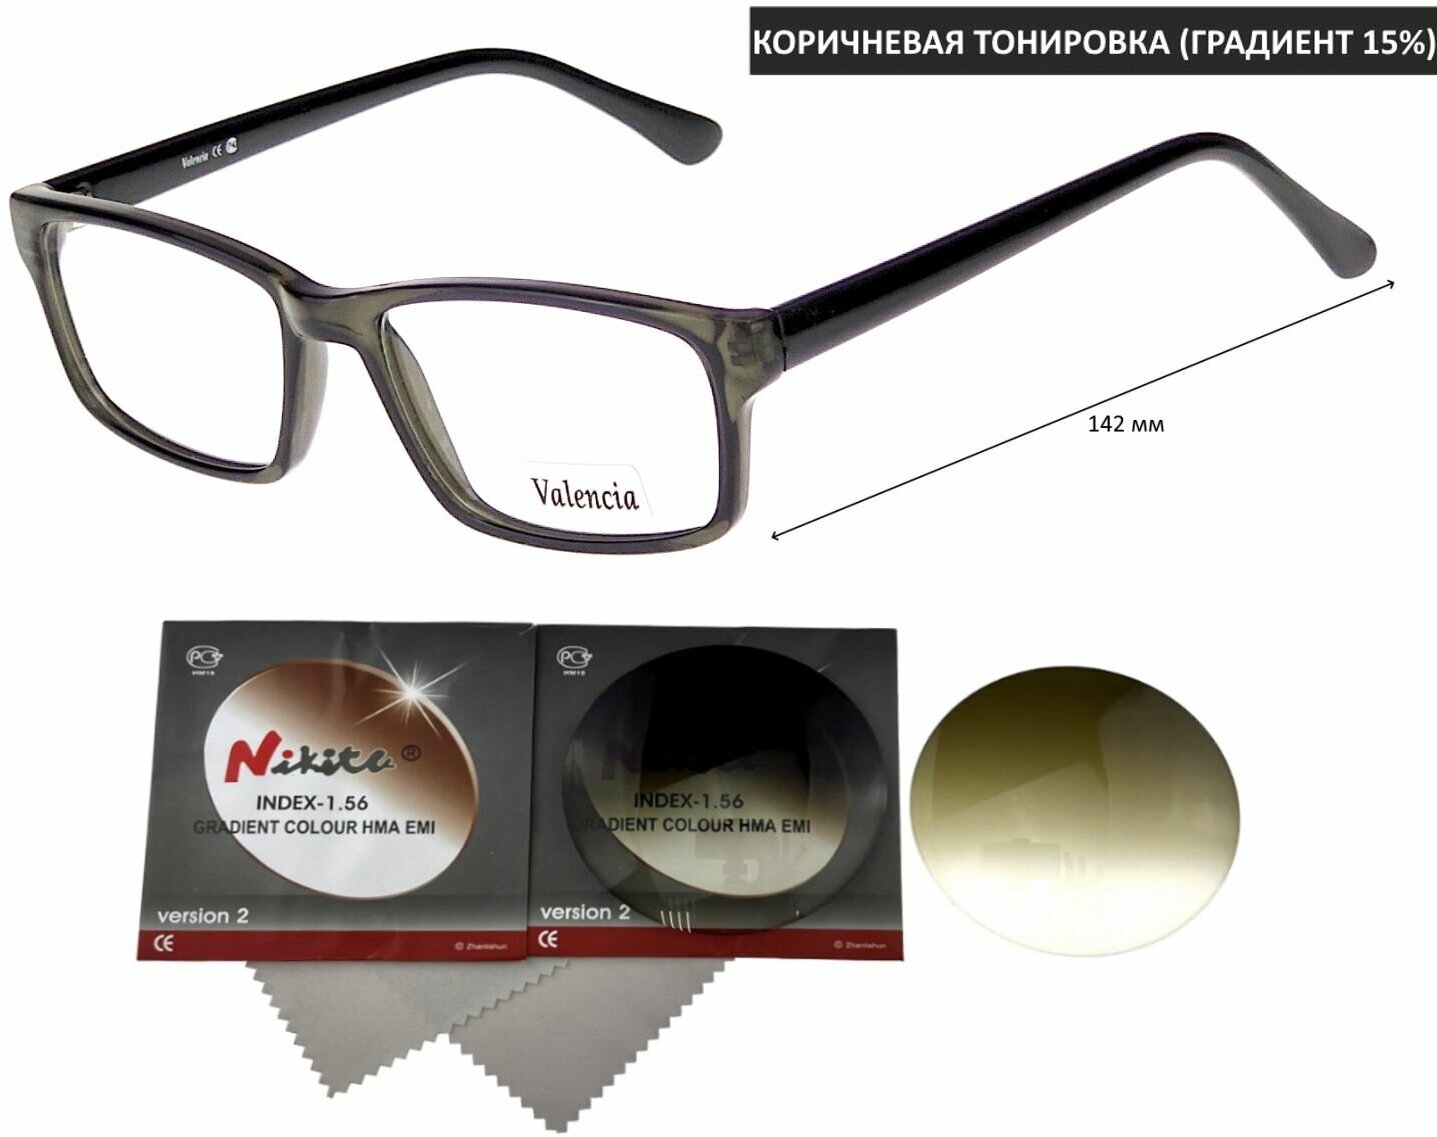 Тонированные очки VALENCIA мод. 41141 Цвет 4 с линзами NIKITA 1.56 GRADIENT BROWN, HMA/EMI -2.00 РЦ 60-62